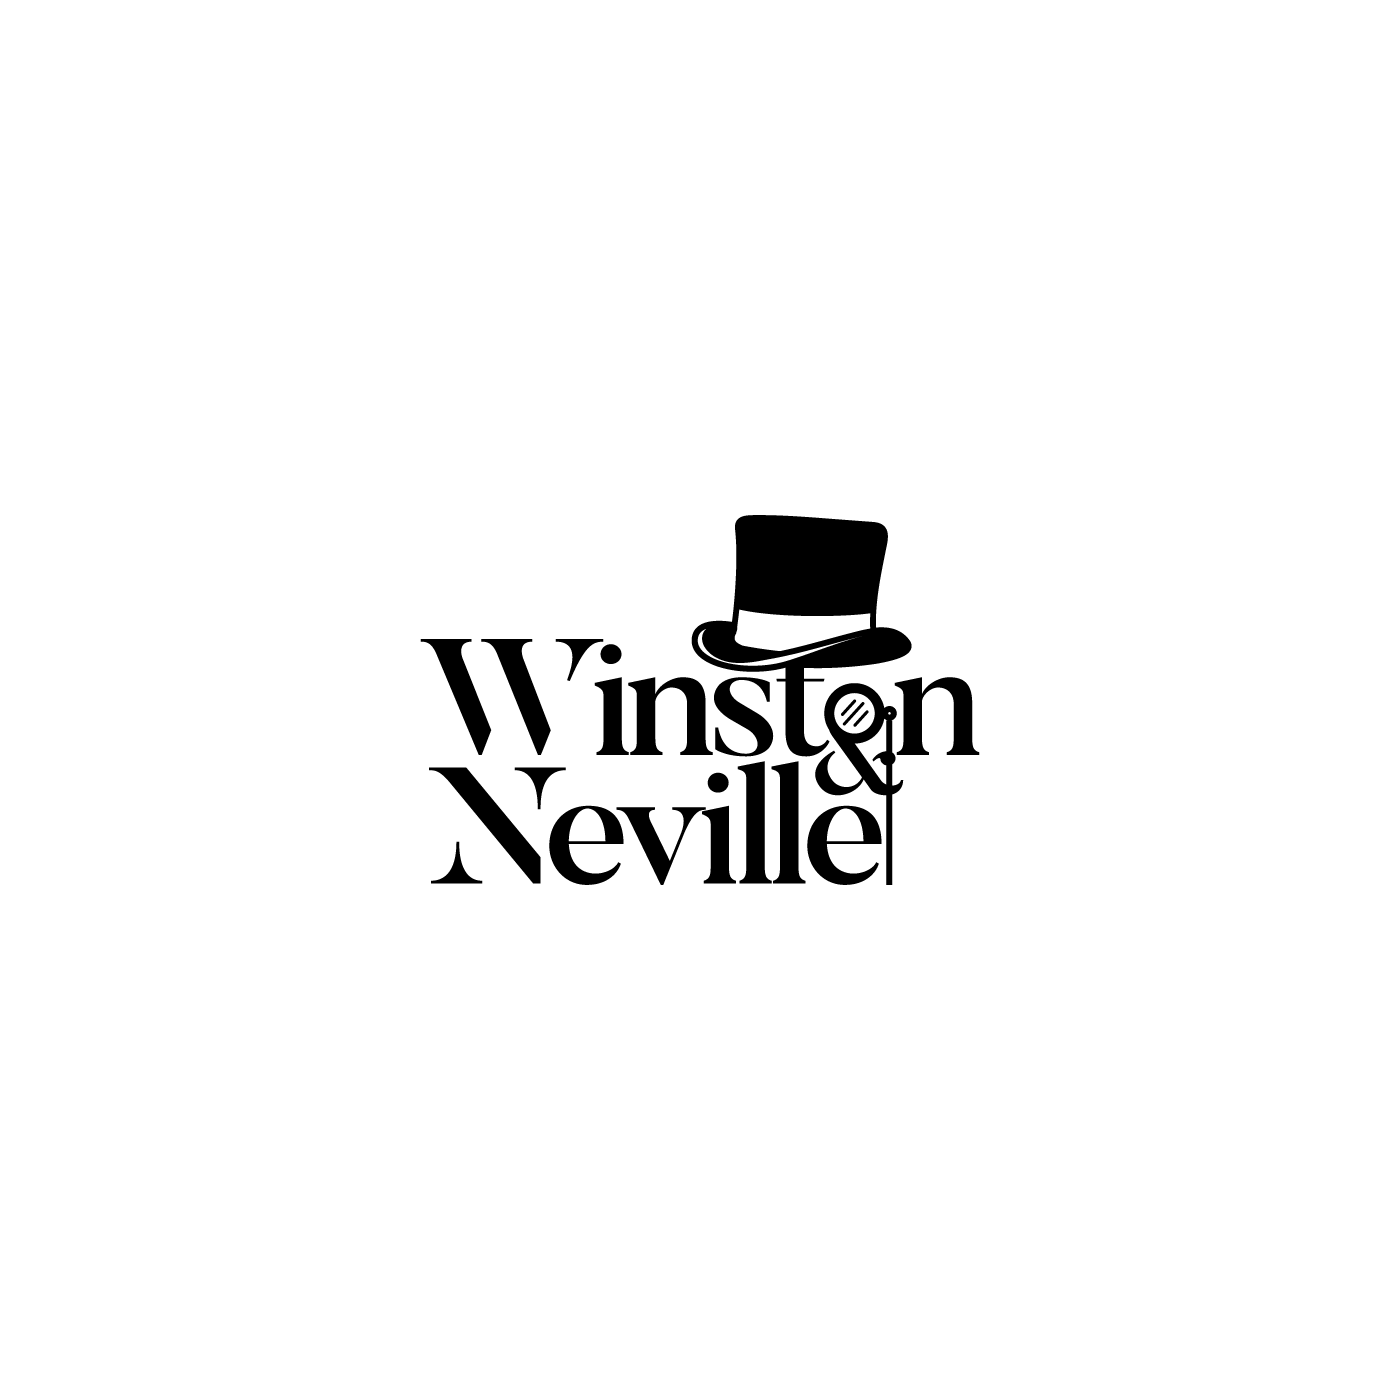 Neville Logo - Upmarket, Playful Logo Design for Winston & Neville by Veronica Dan ...